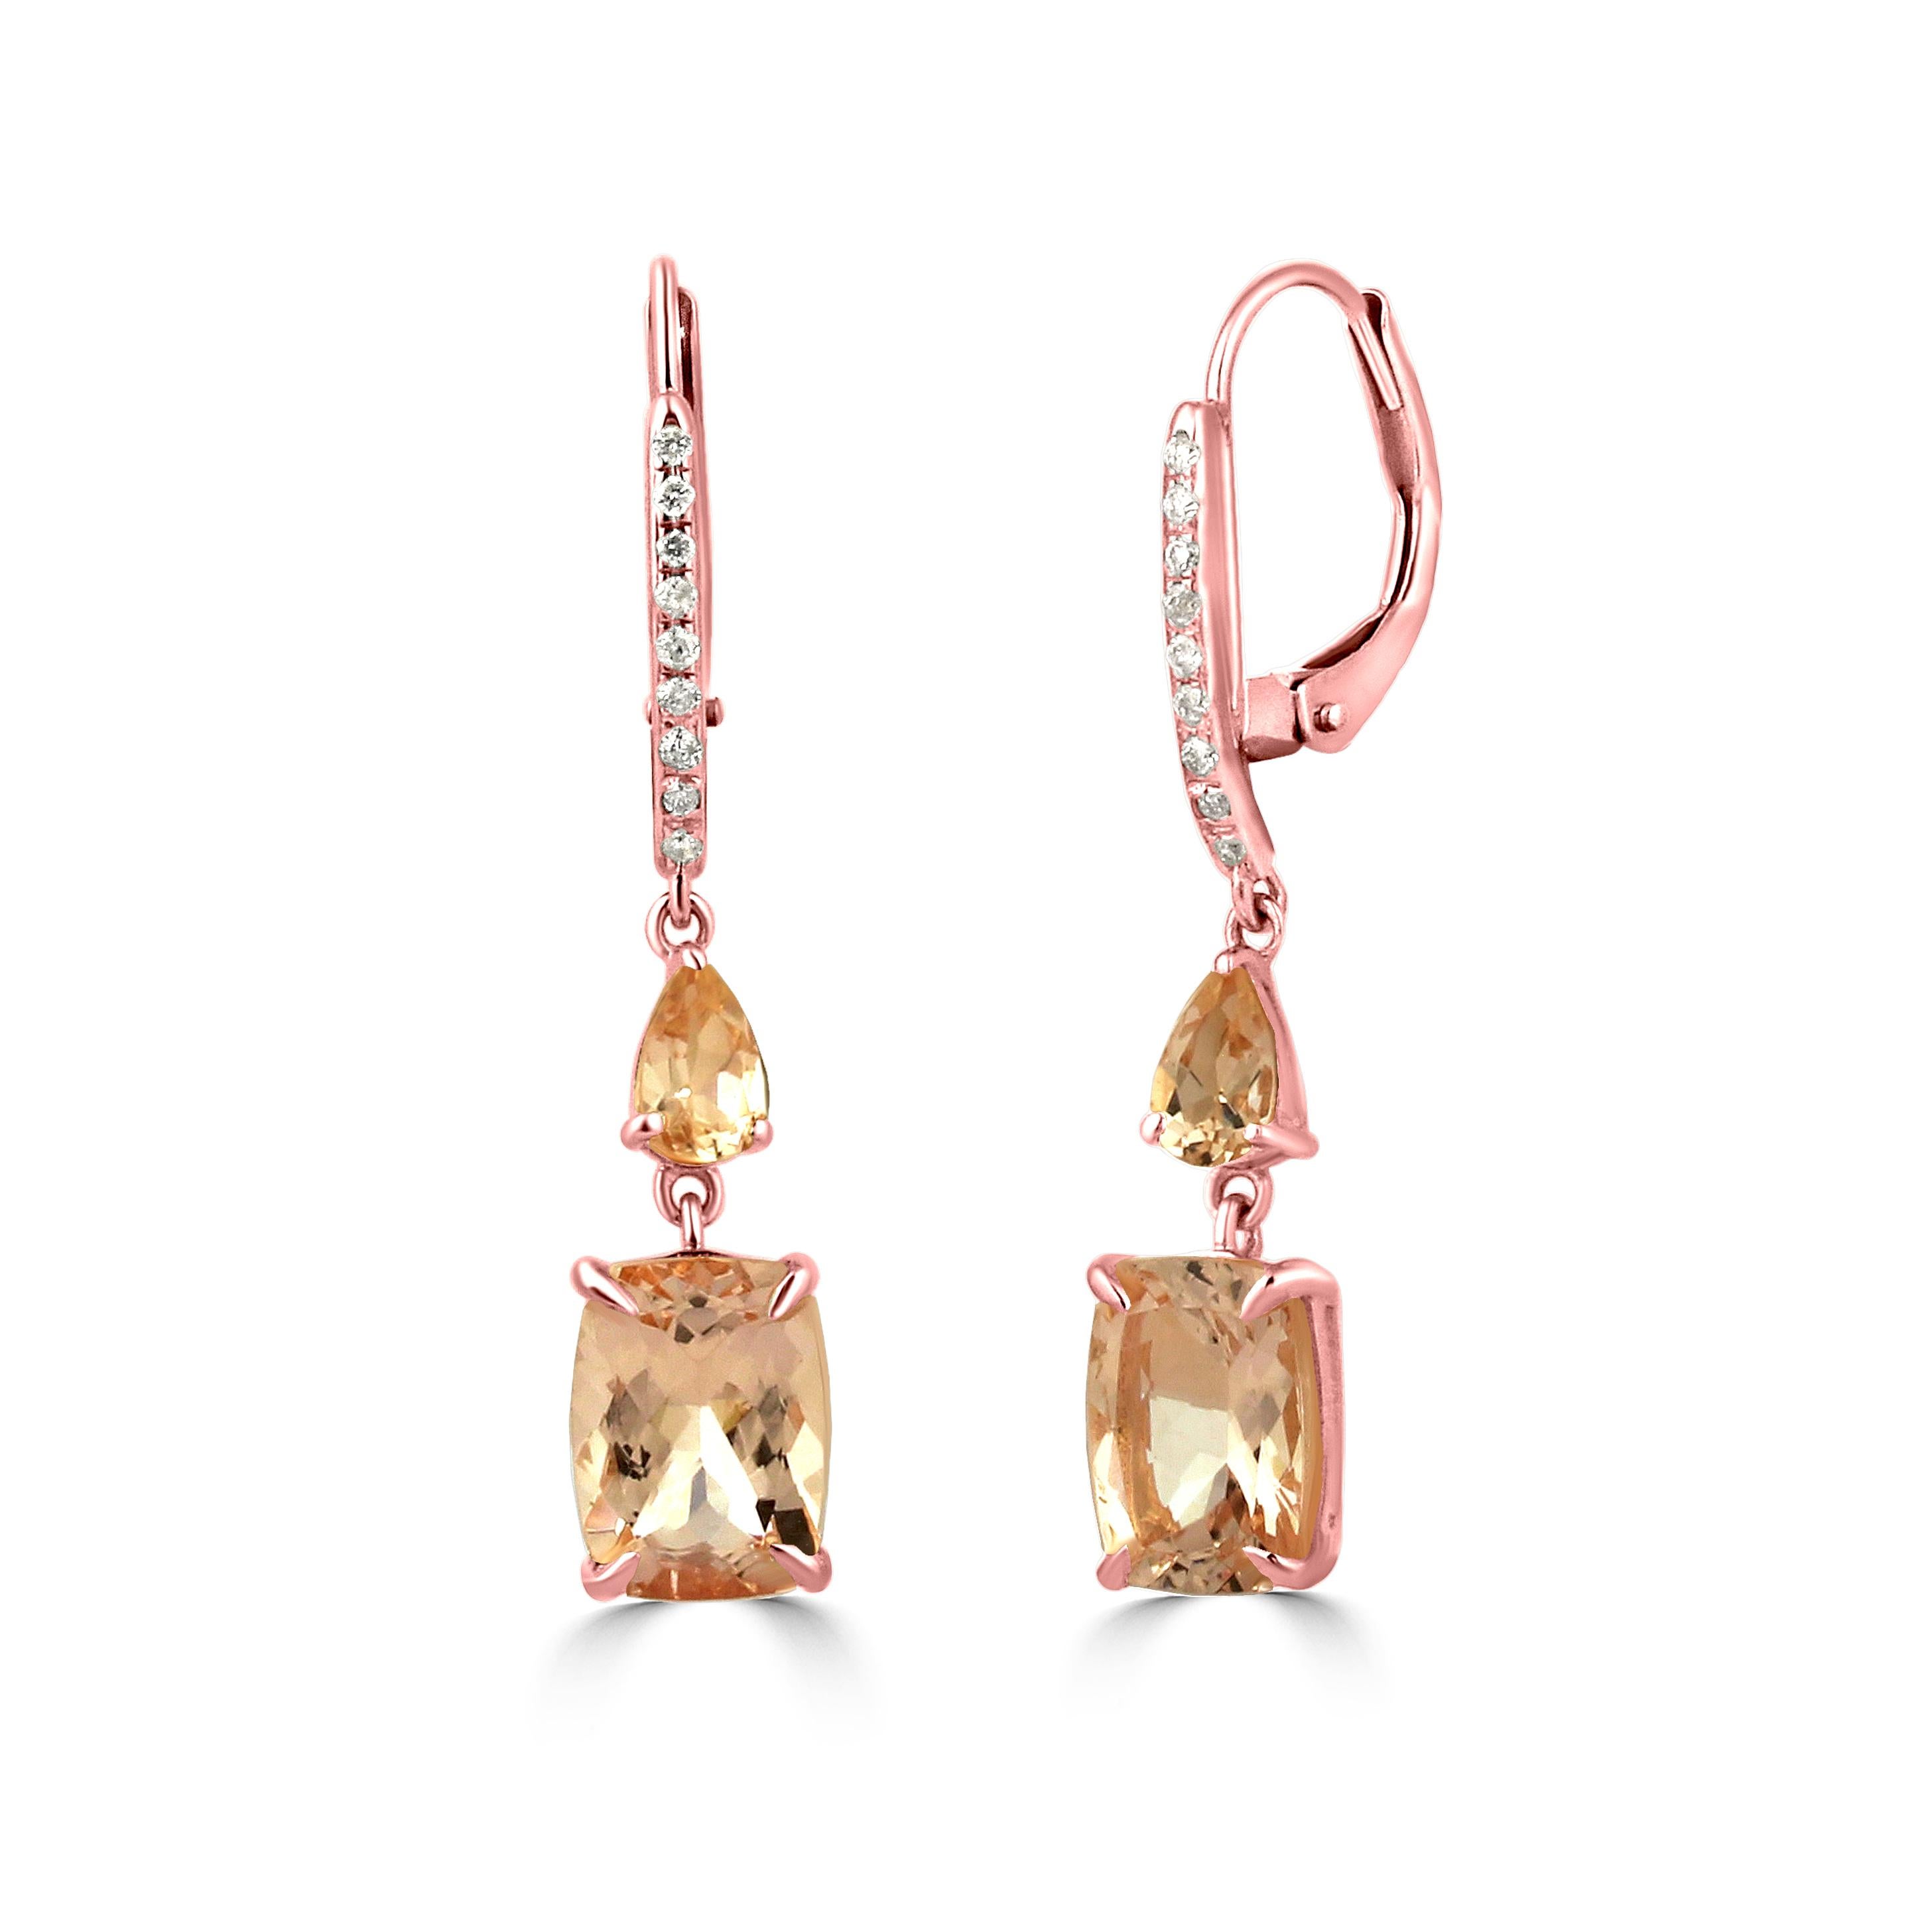 Richten Sie Ihr Augenmerk auf diese hübschen rosa Edelsteintropfenohrringe von Gemistry! Exotische Morganit-Tropfen im Kissen- und Birnenschliff mit einem Gewicht von 2,99 ct. funkeln aus 14 Karat Roségold und werden von runden Diamanten im